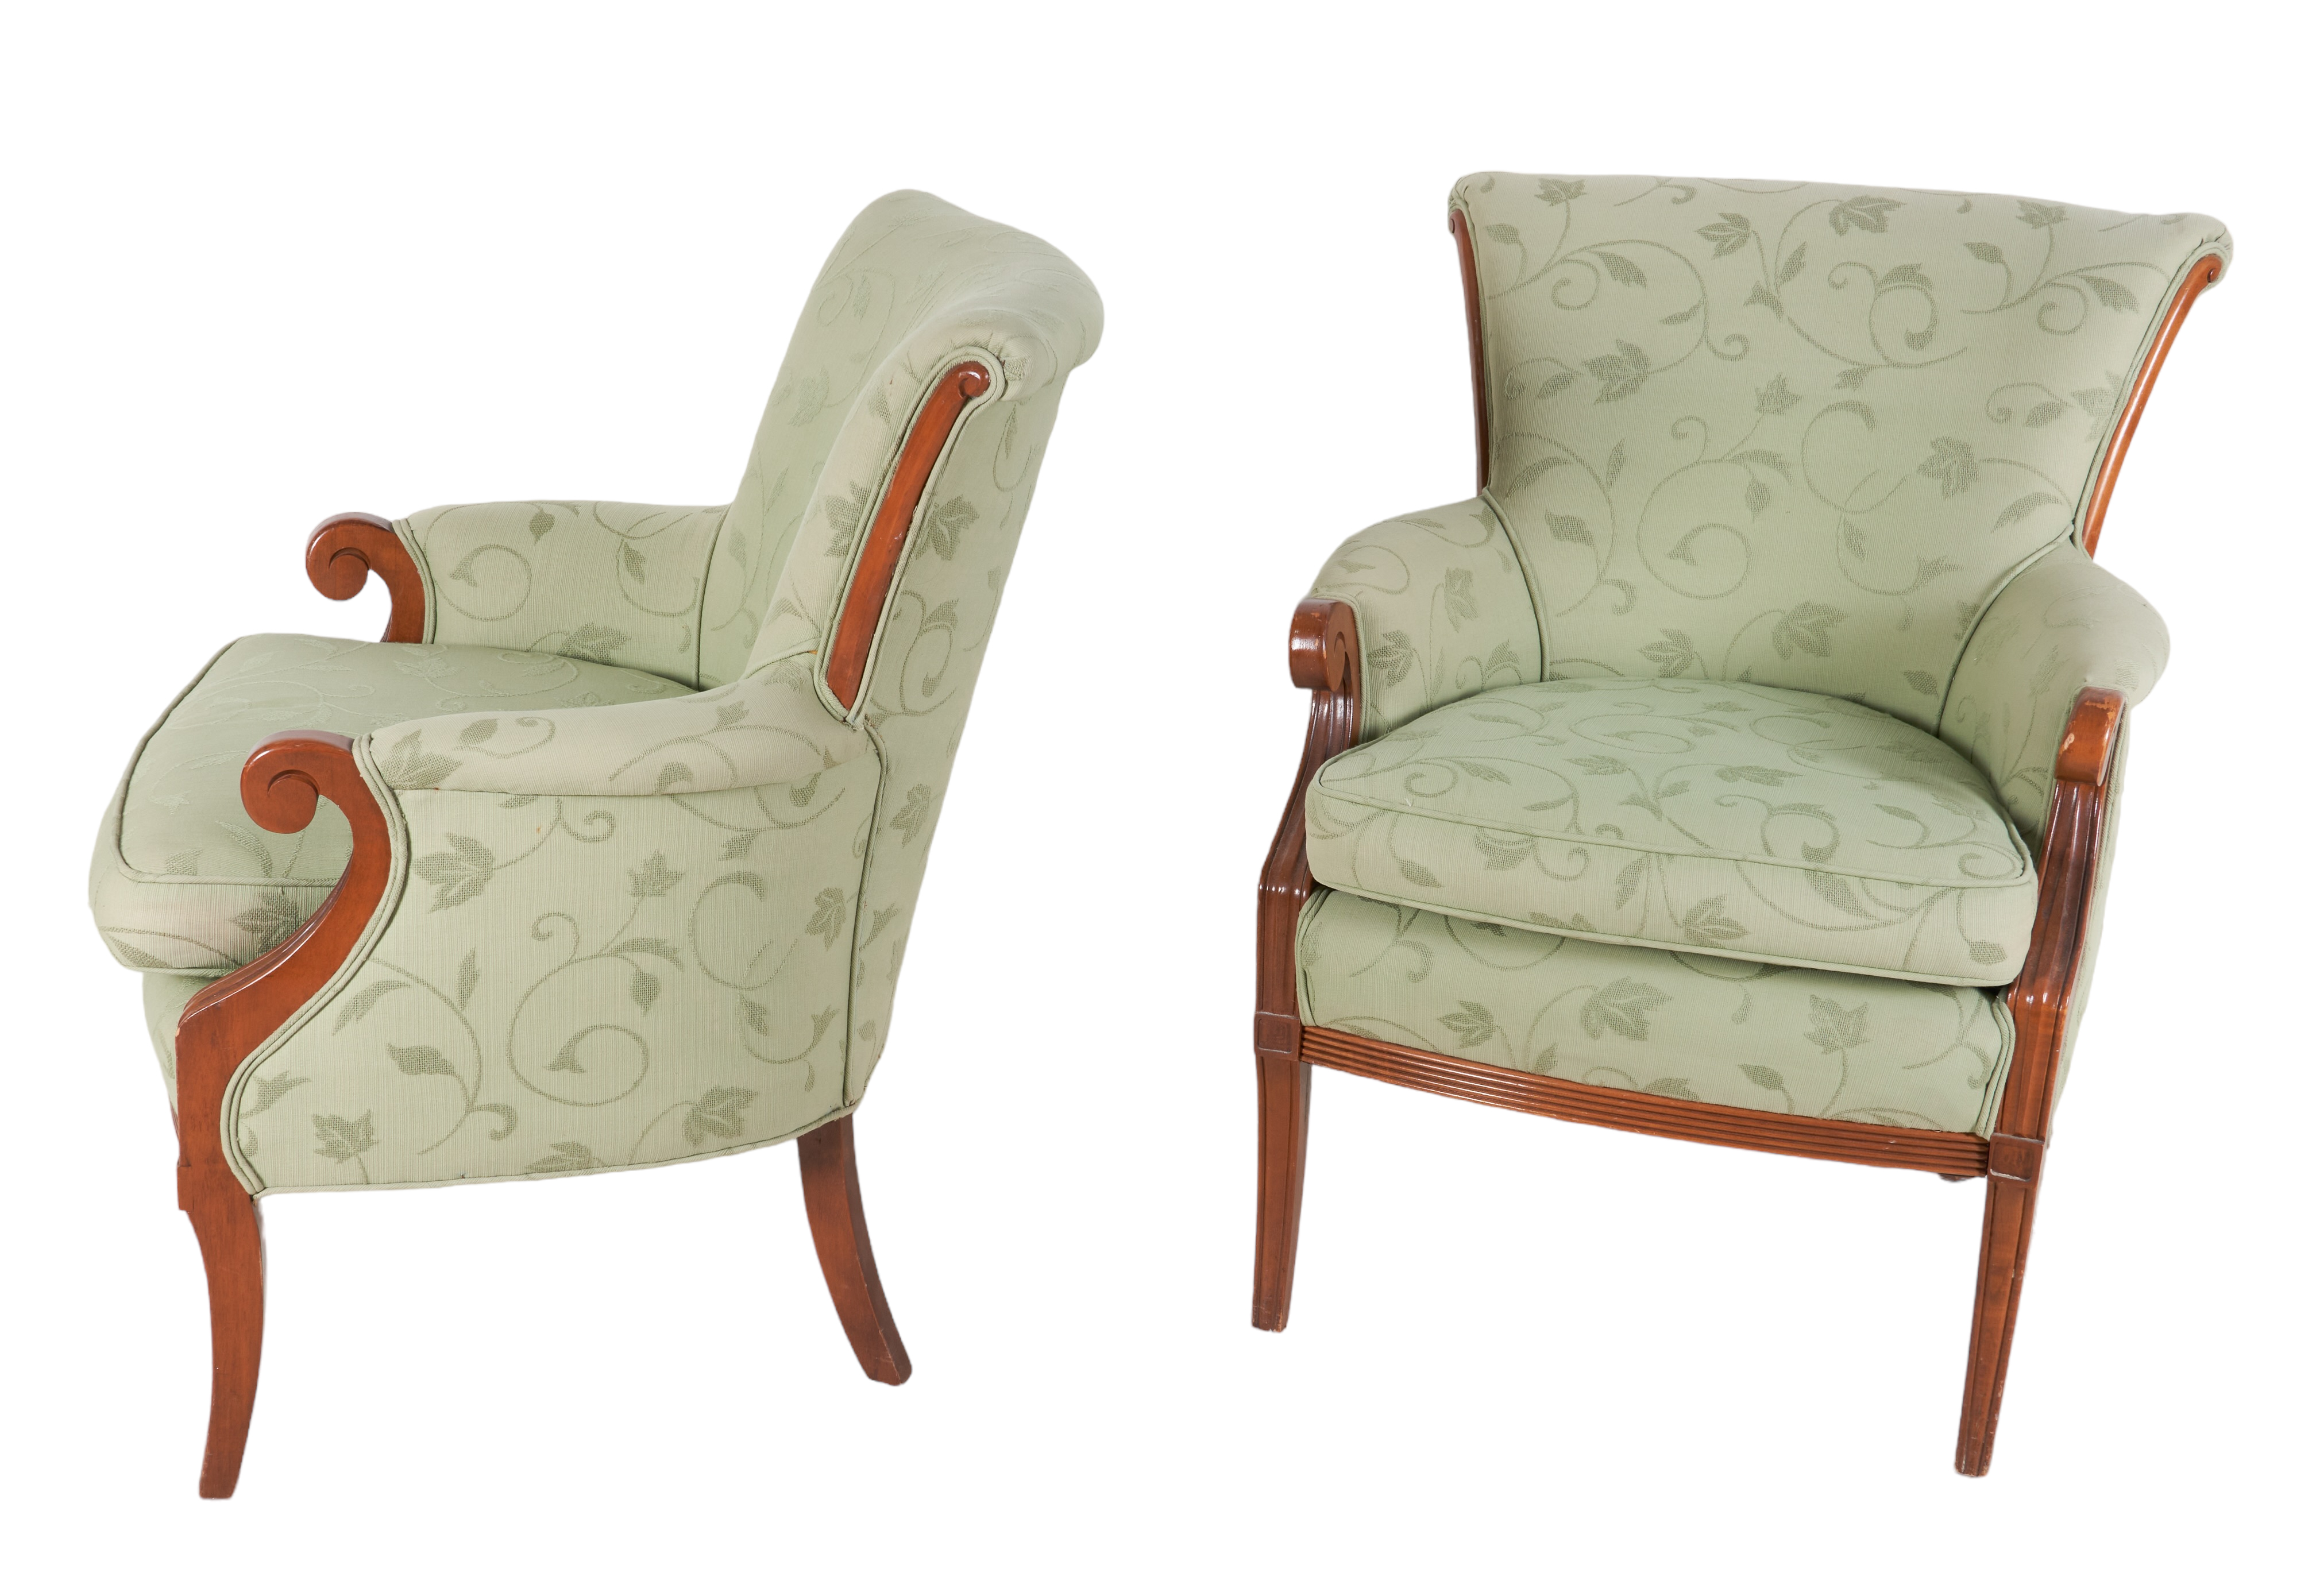 Pair Louis XVI style fireside chairs  3b39a8